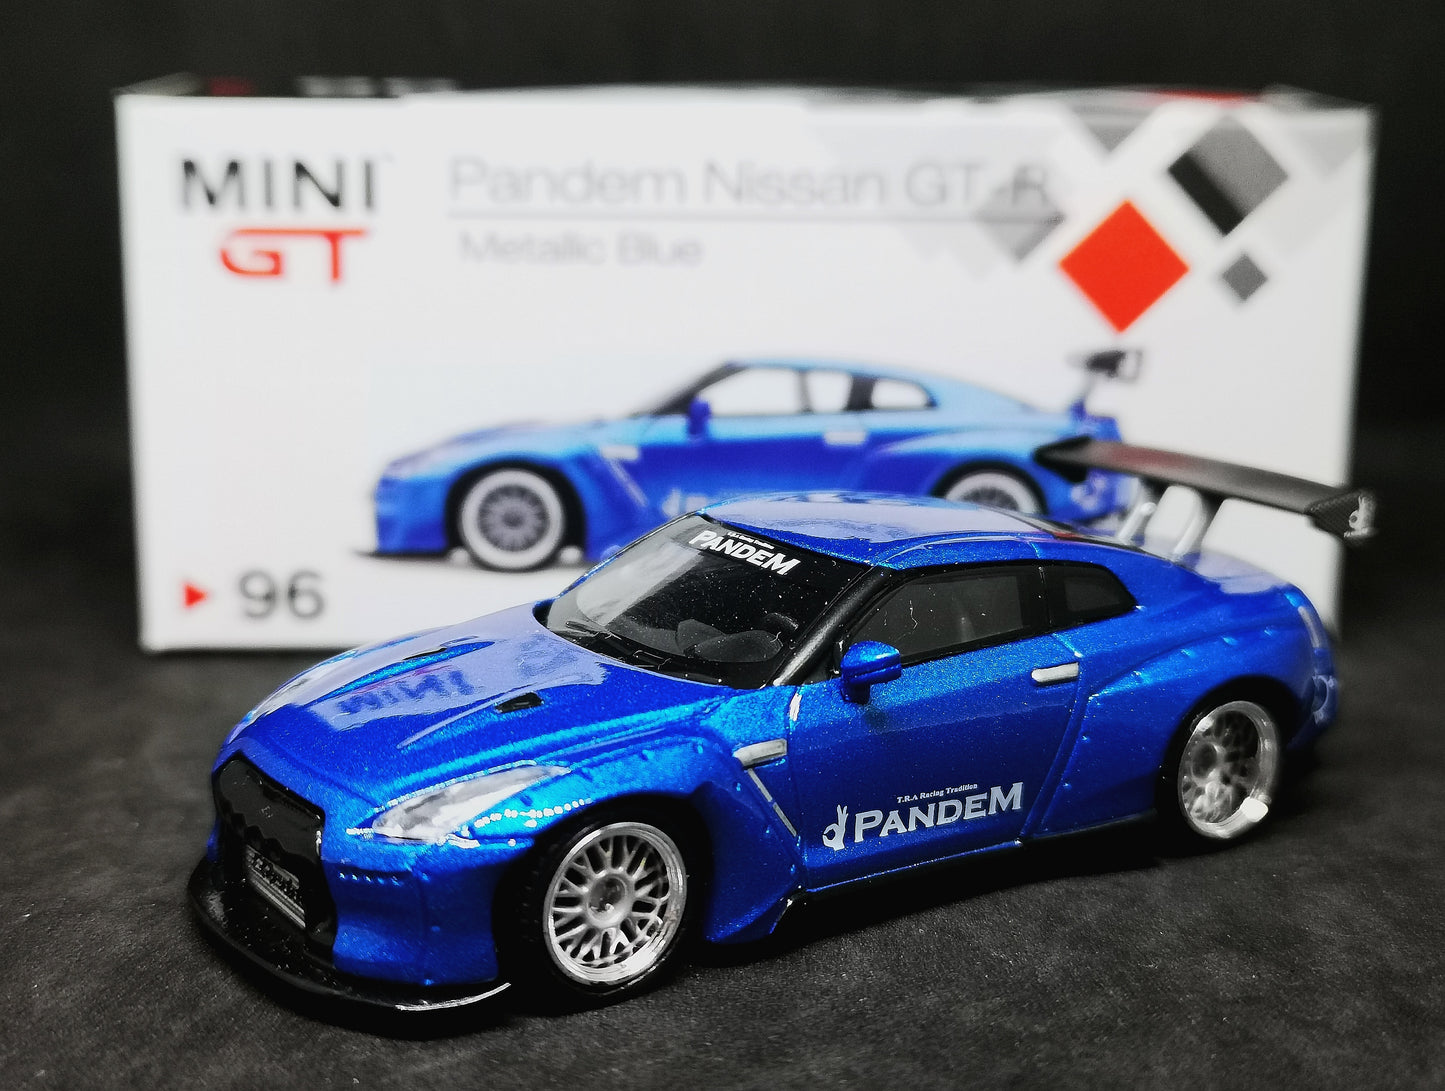 Mini GT #96 Pandem👌Nissan GT-R (Metallic Blue)